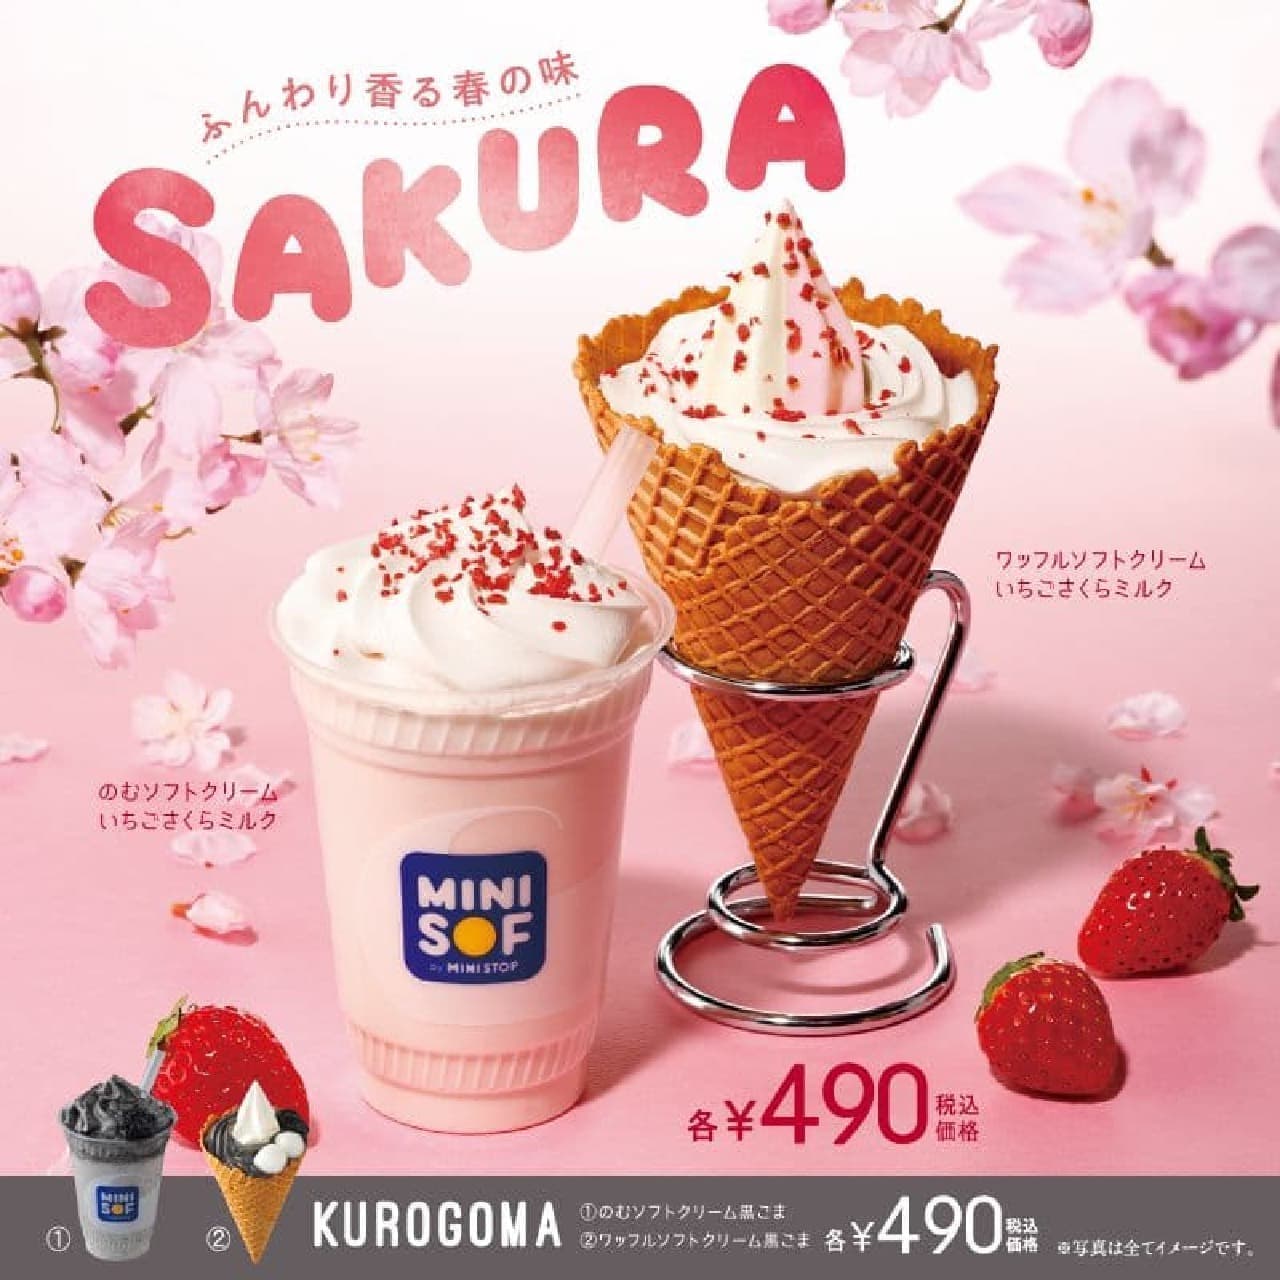 Minisoft "Waffle Soft Cream Strawberry Sakura Milk